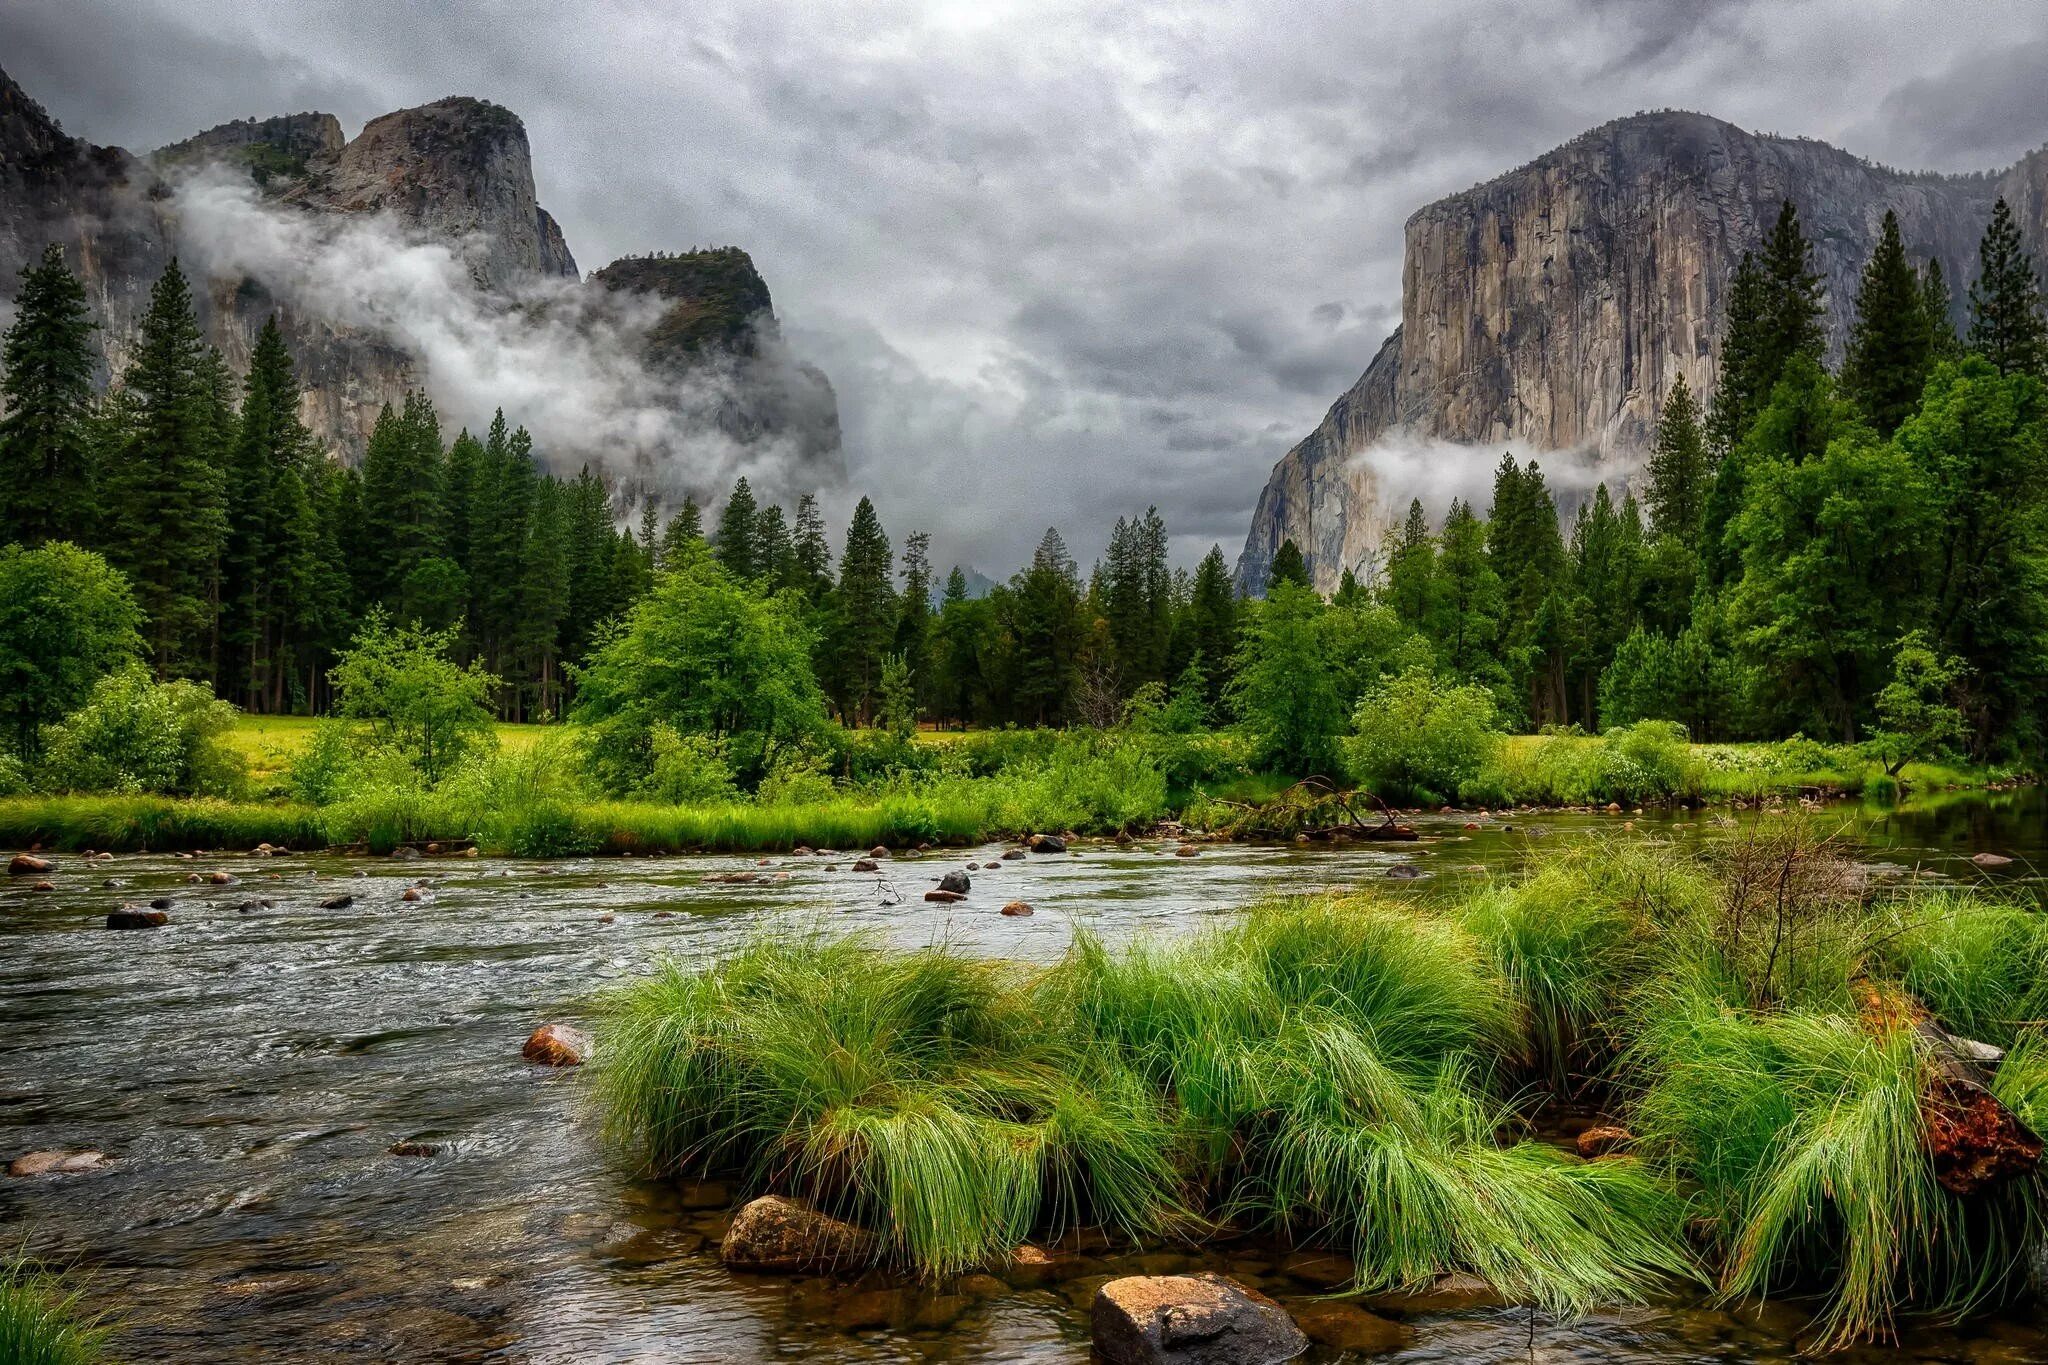 Река Мерсед, Йосемити, США.. Река, горы, лес, River, Mountains, Forest. Лес Йосемити. Красивый пейзаж. Красивые картинки природы хорошего качества